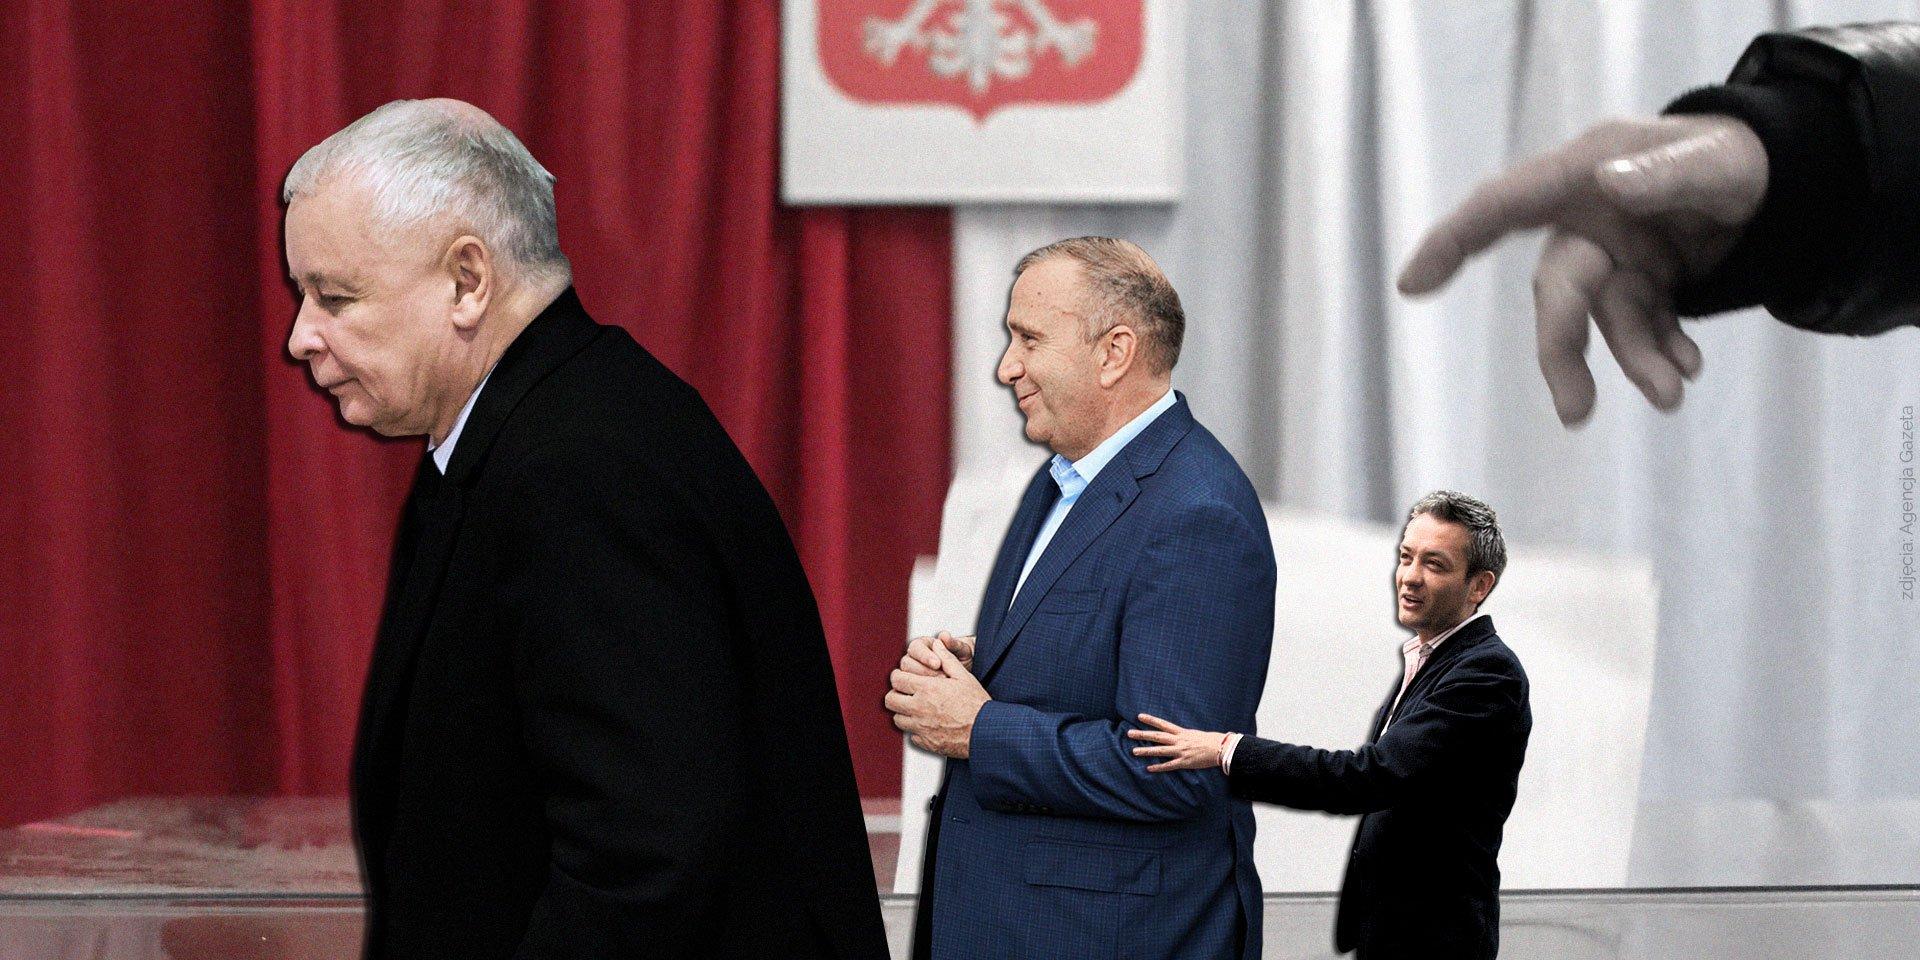 Trzech polityków: Jarosław Kaczyński, Grzegorz Schetyna i Robert Biedroń